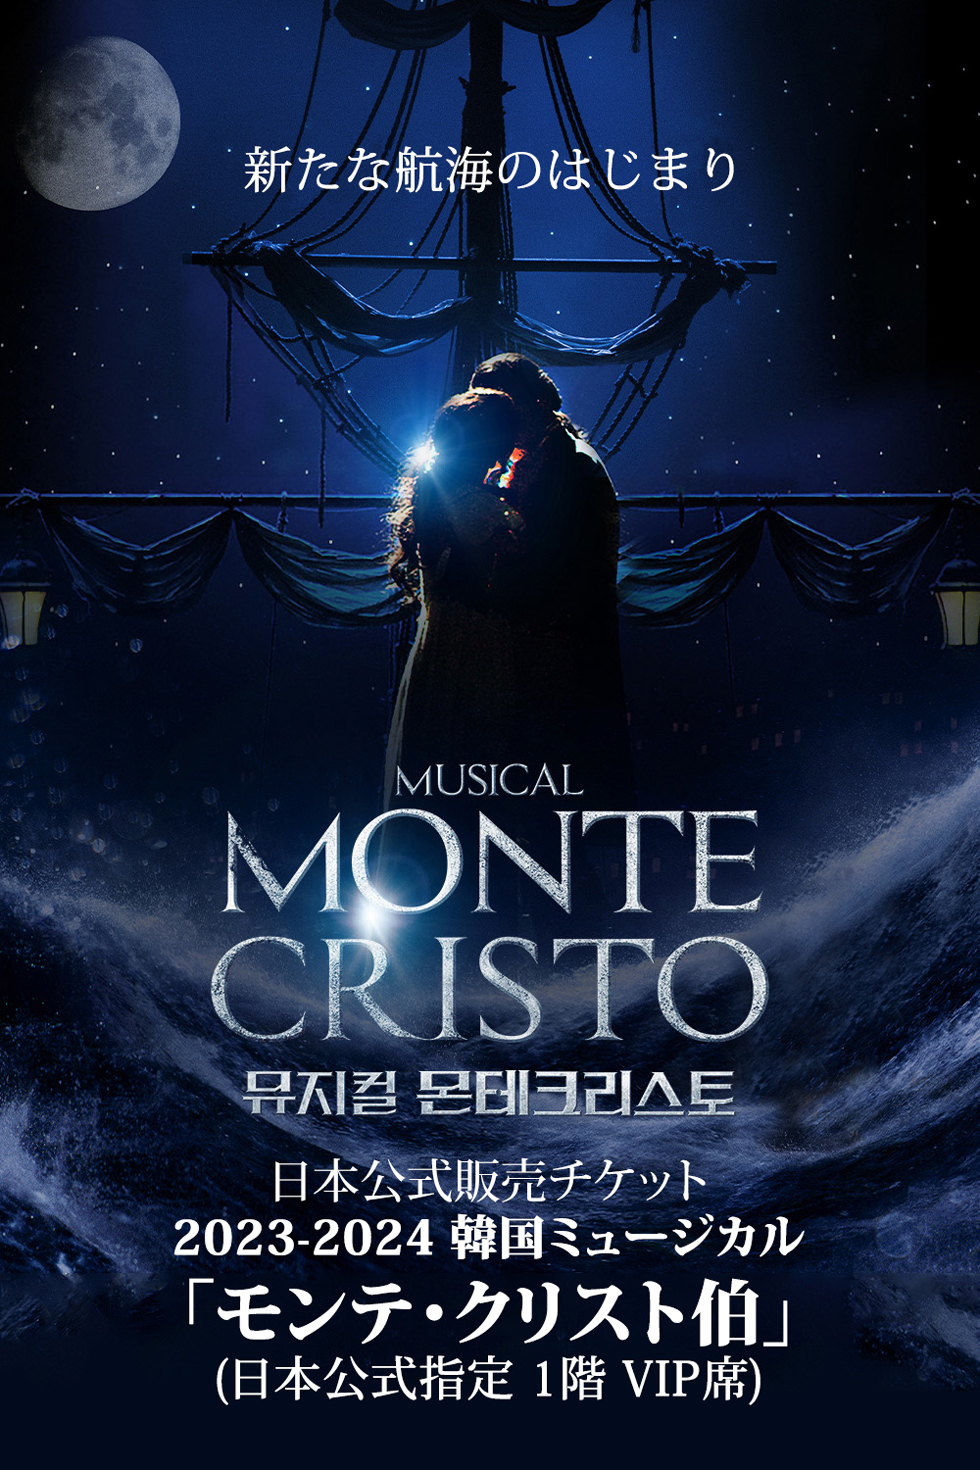 【日本公式販売】2023-2024 韓国ミュージカル「モンテ・クリスト伯」日本公式チケット (1階 VIP席)